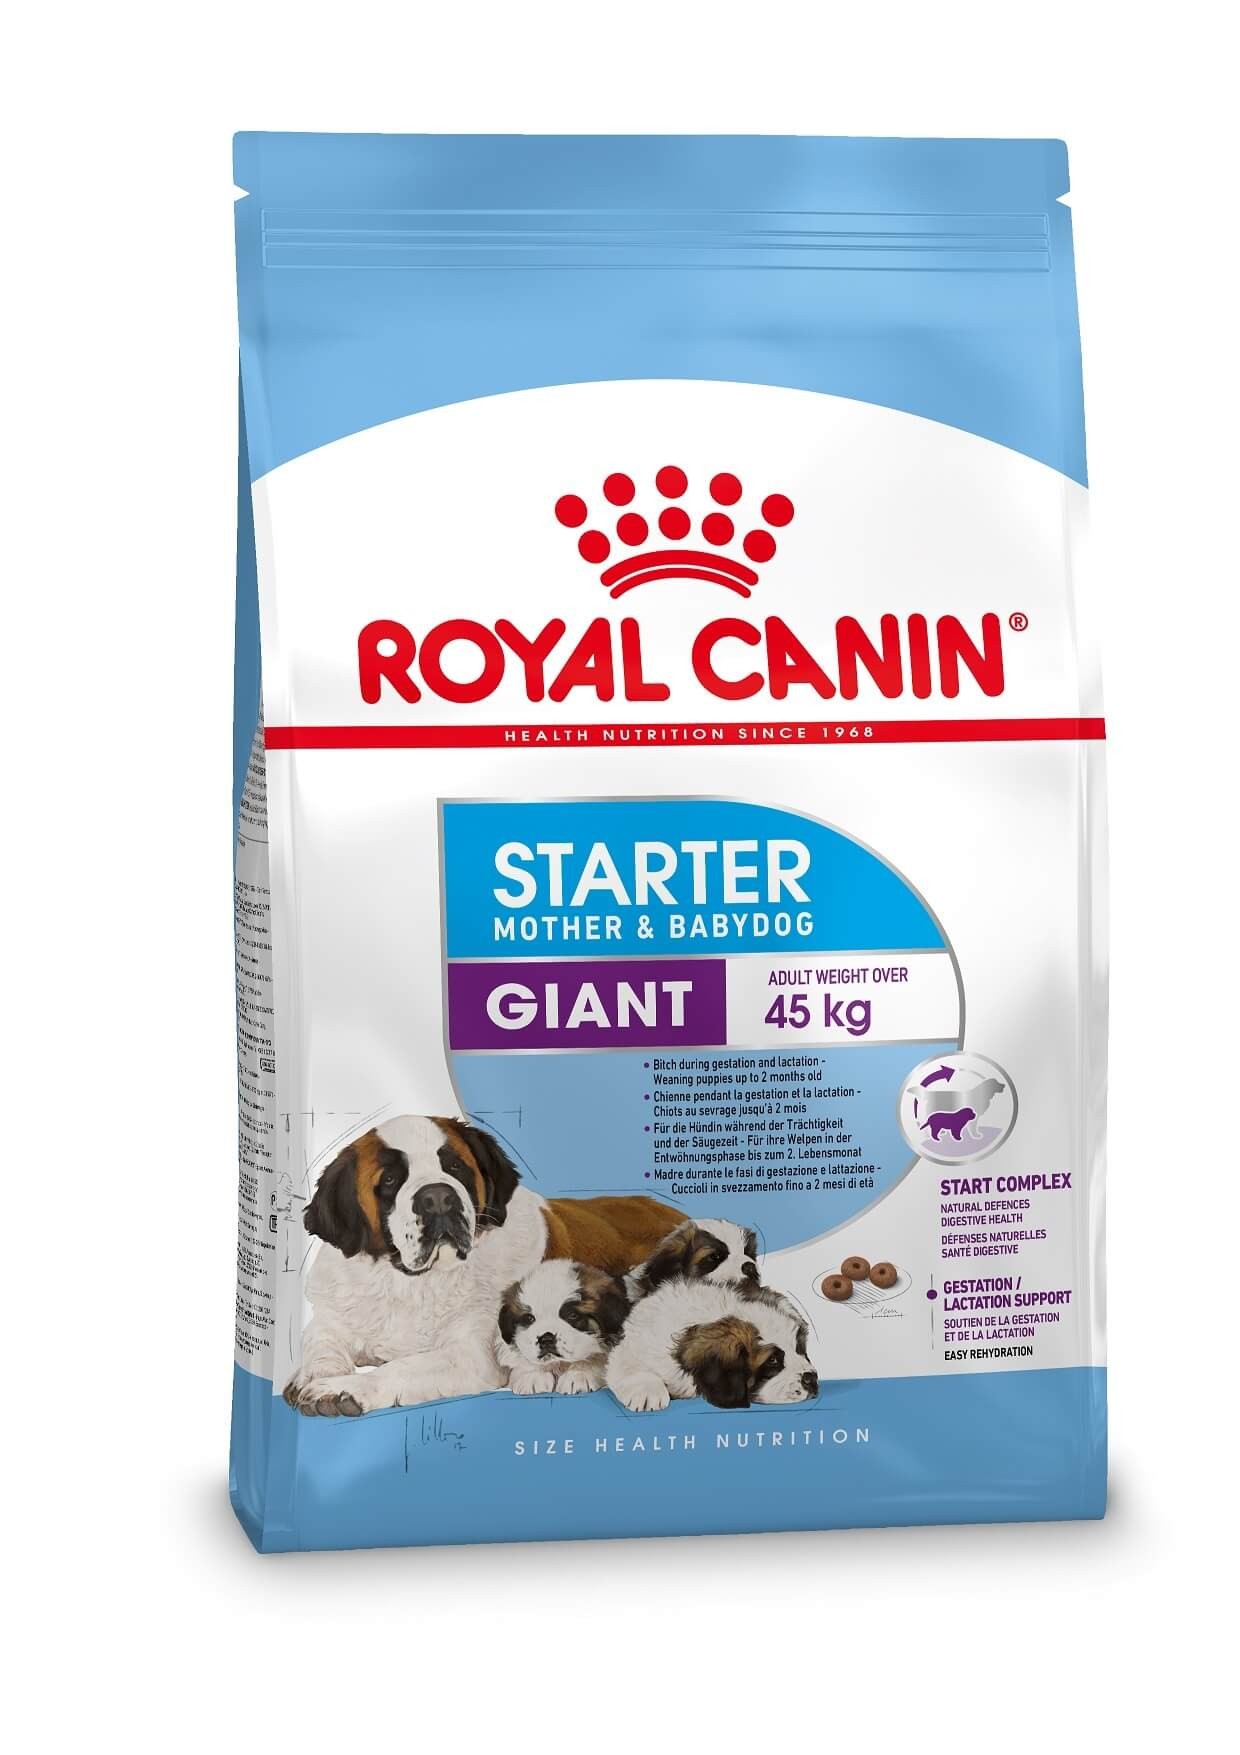 Royal Canin Giant Starter Mother and Babydog hundfoder